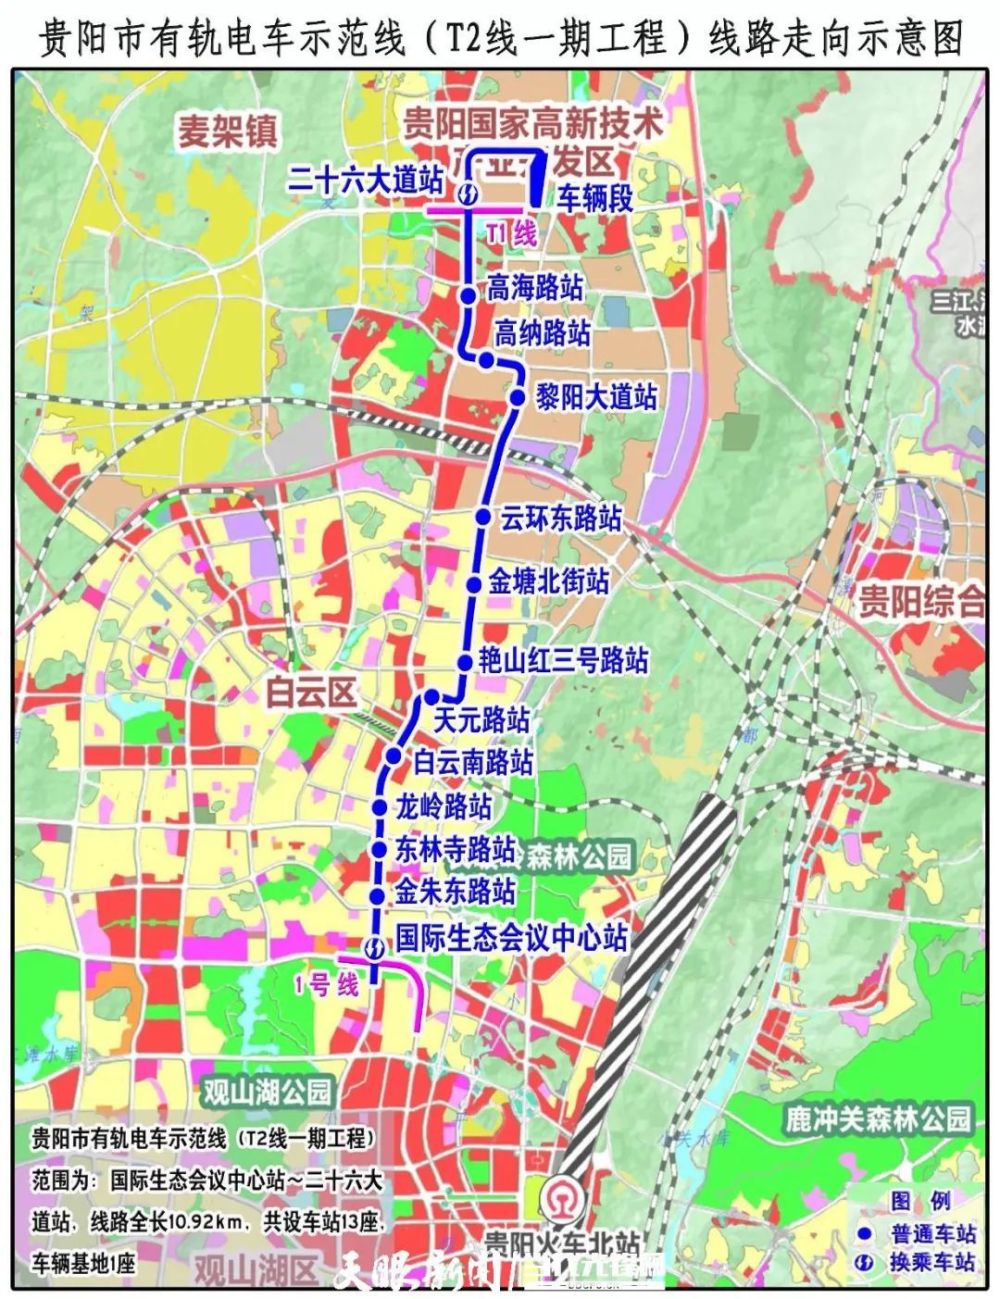 贵阳市有轨电车t2线混凝土主体工程基本完成